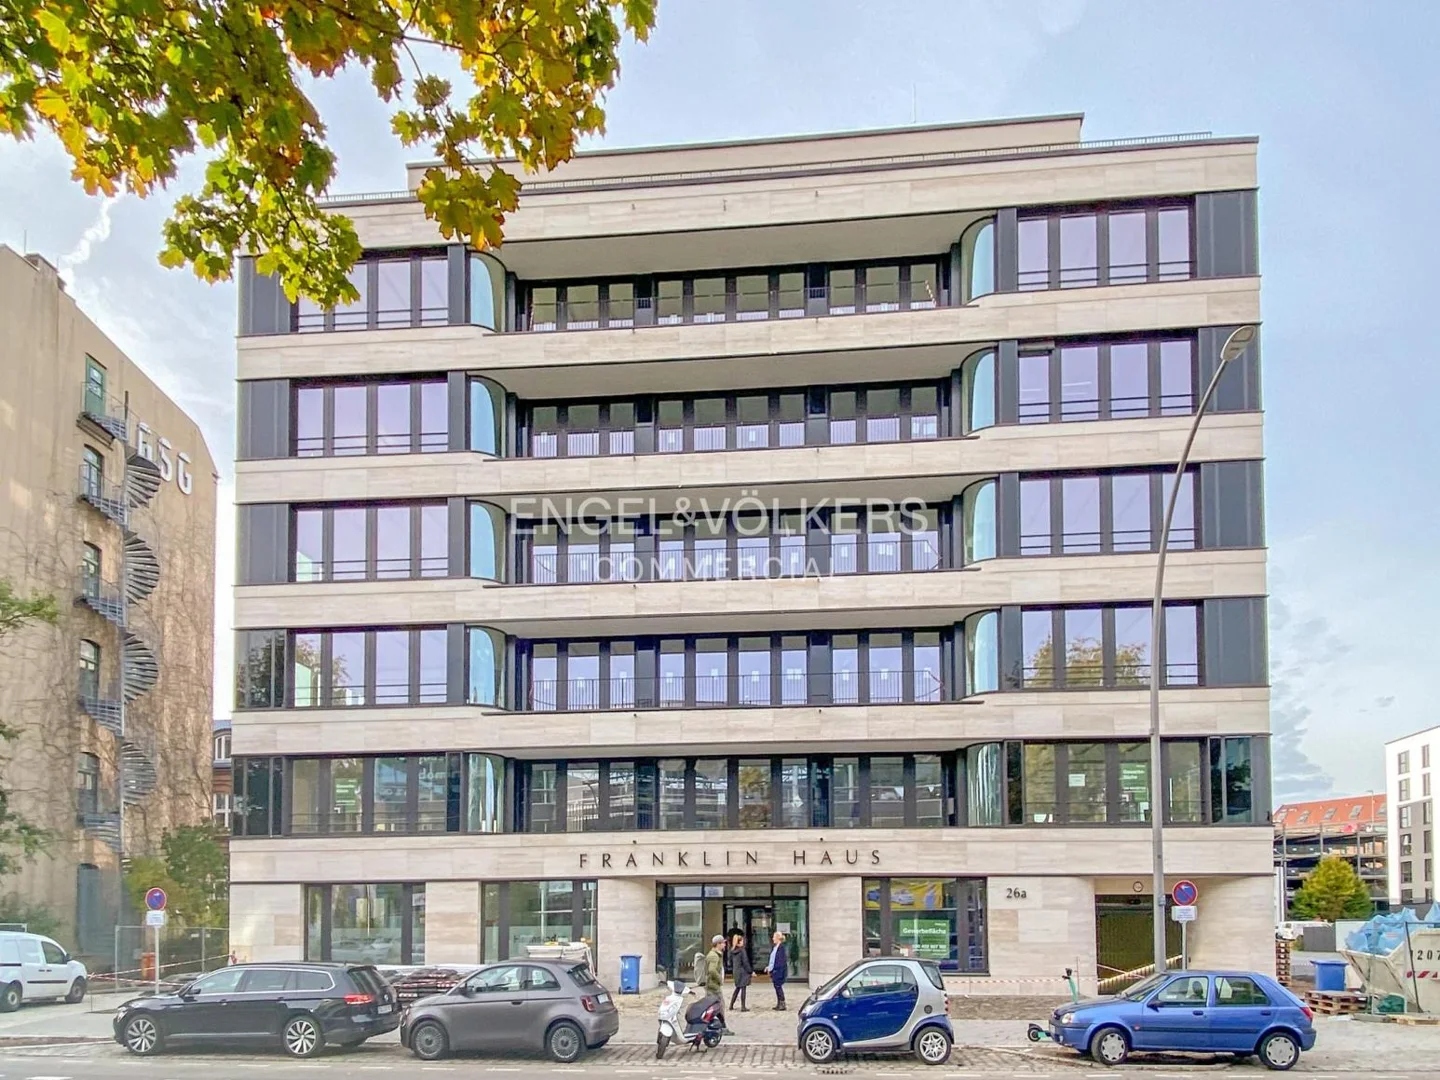 Franklinhaus: Ihre exklusive Büroadresse am Ernst-Reuter-Platz